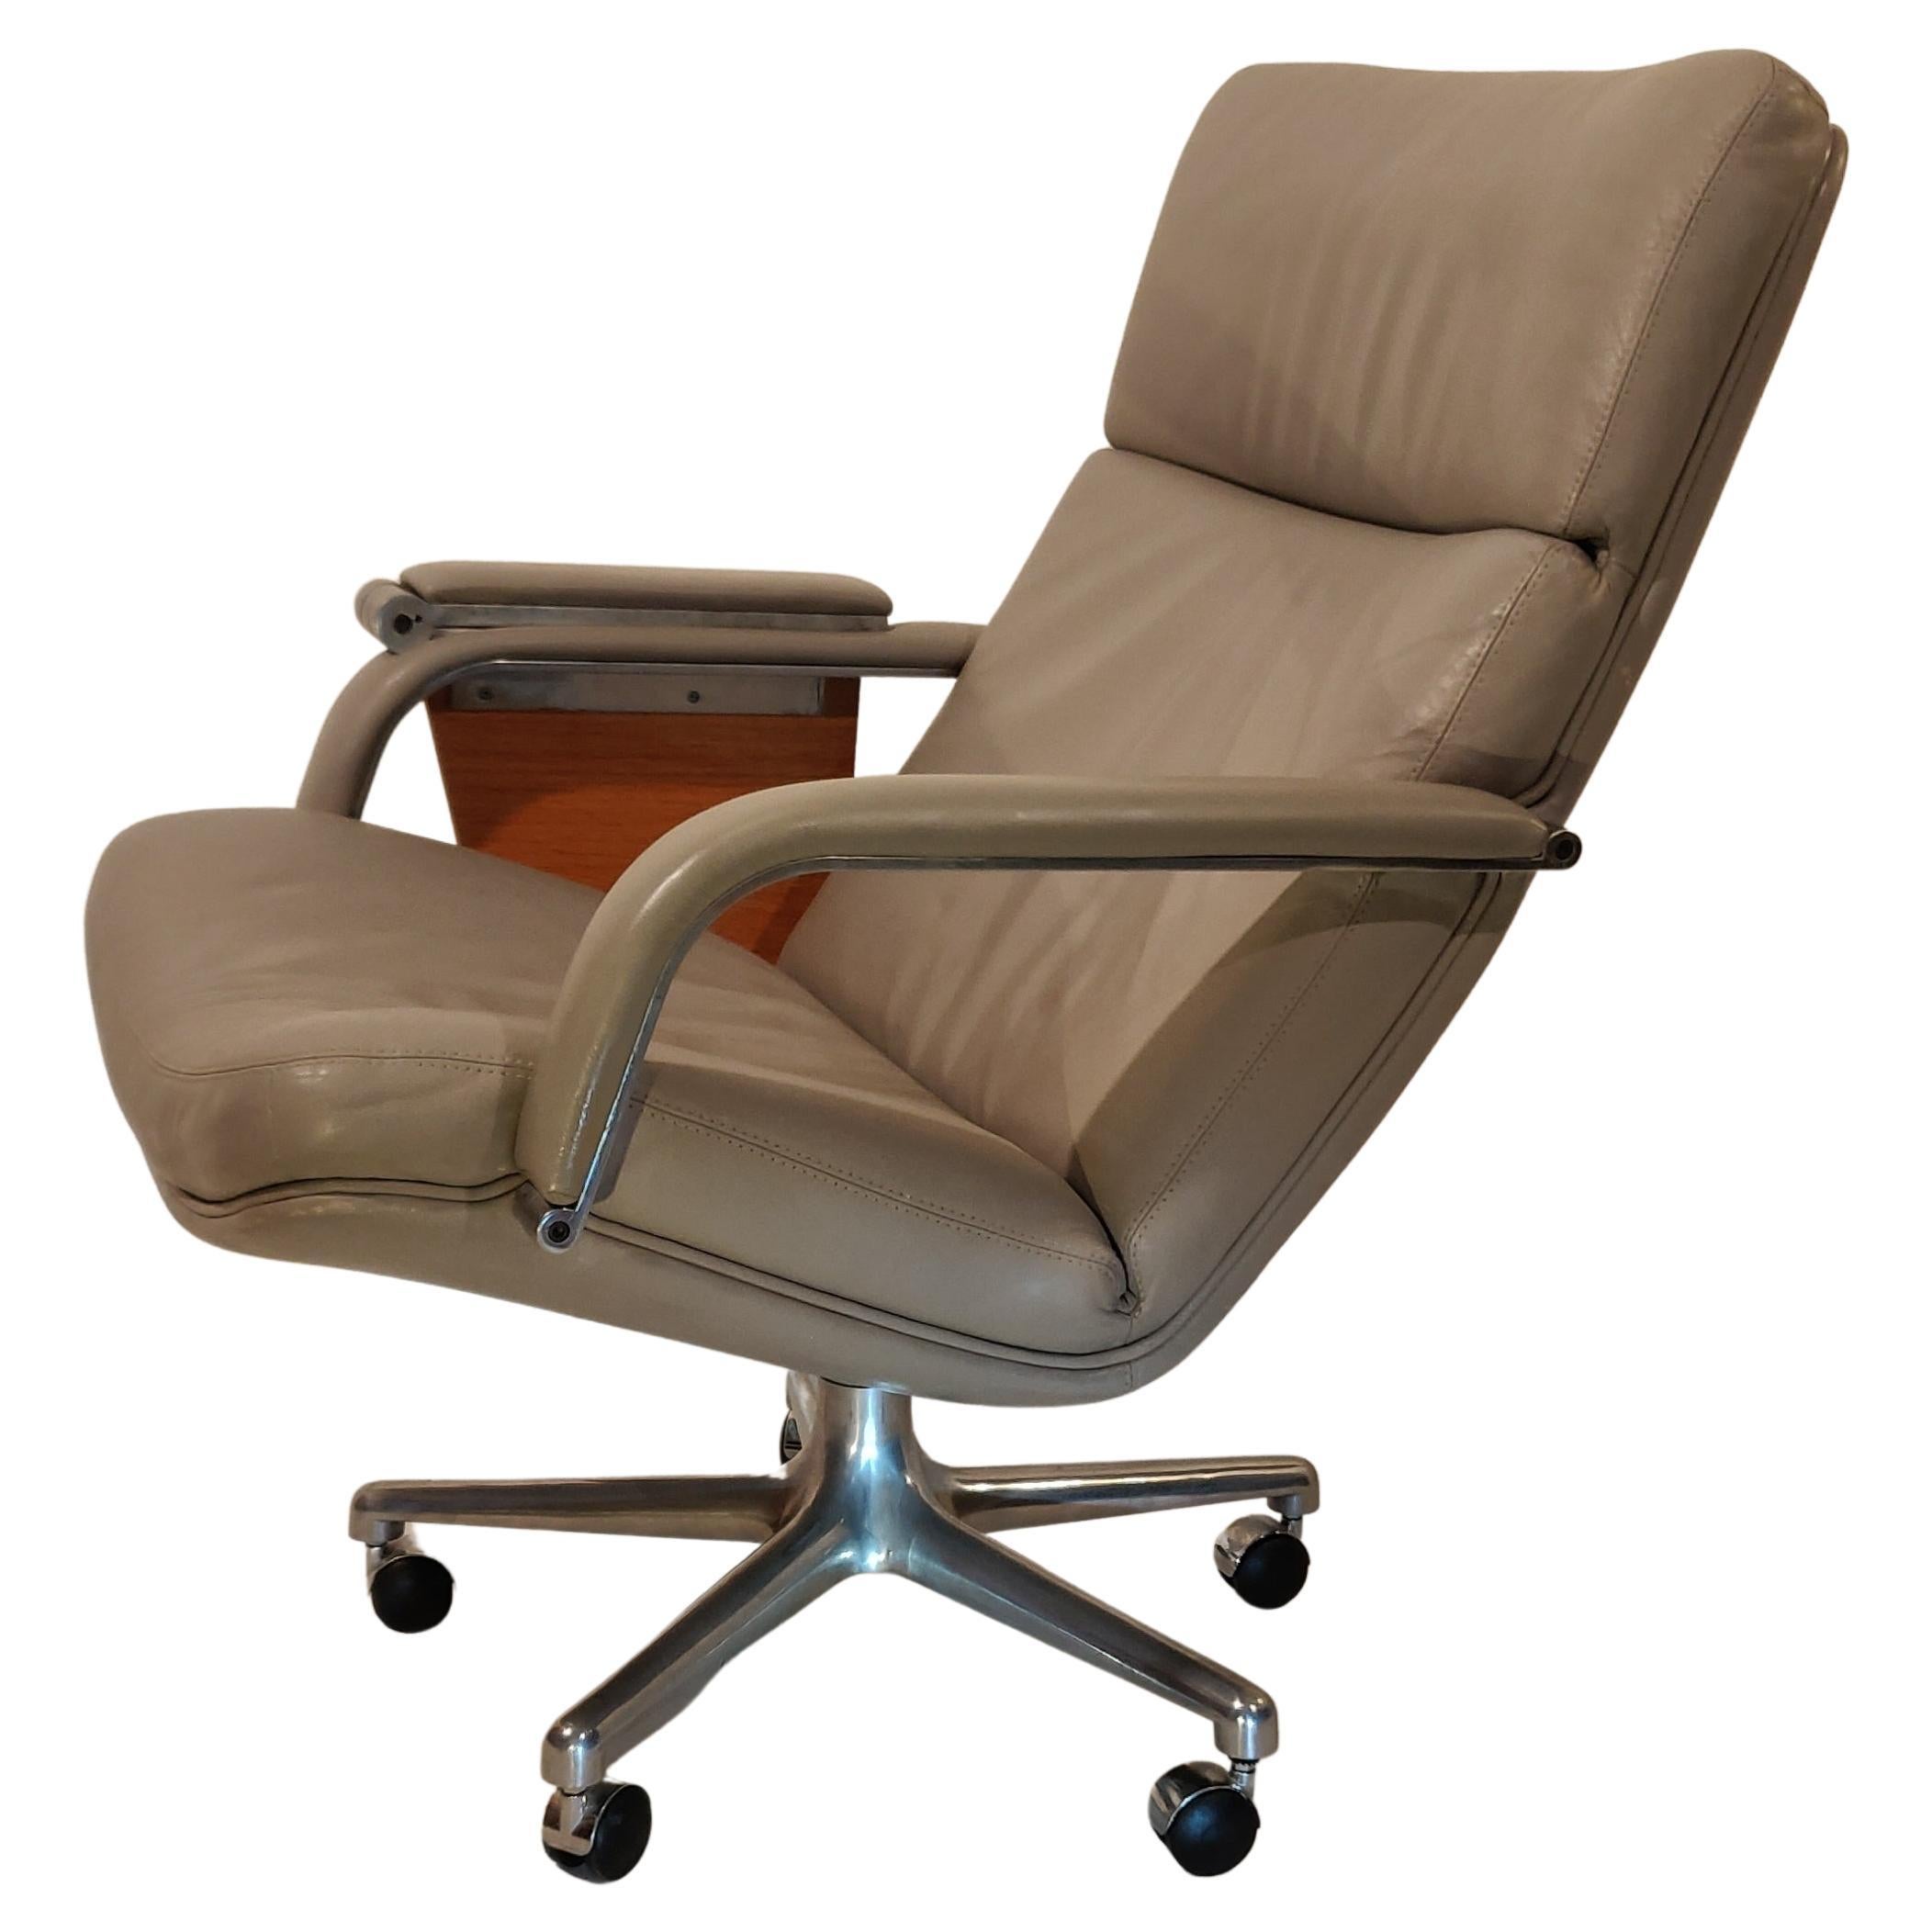 Version spéciale du fauteuil pivotant facile, type F141, conçu par Geoffrey Harcourt pour Artifort, 1970. Revêtement en cuir gris souple et base à 5 pieds sur roulettes en aluminium. Notamment avec un tableau d'écriture en bois extensible intégré.